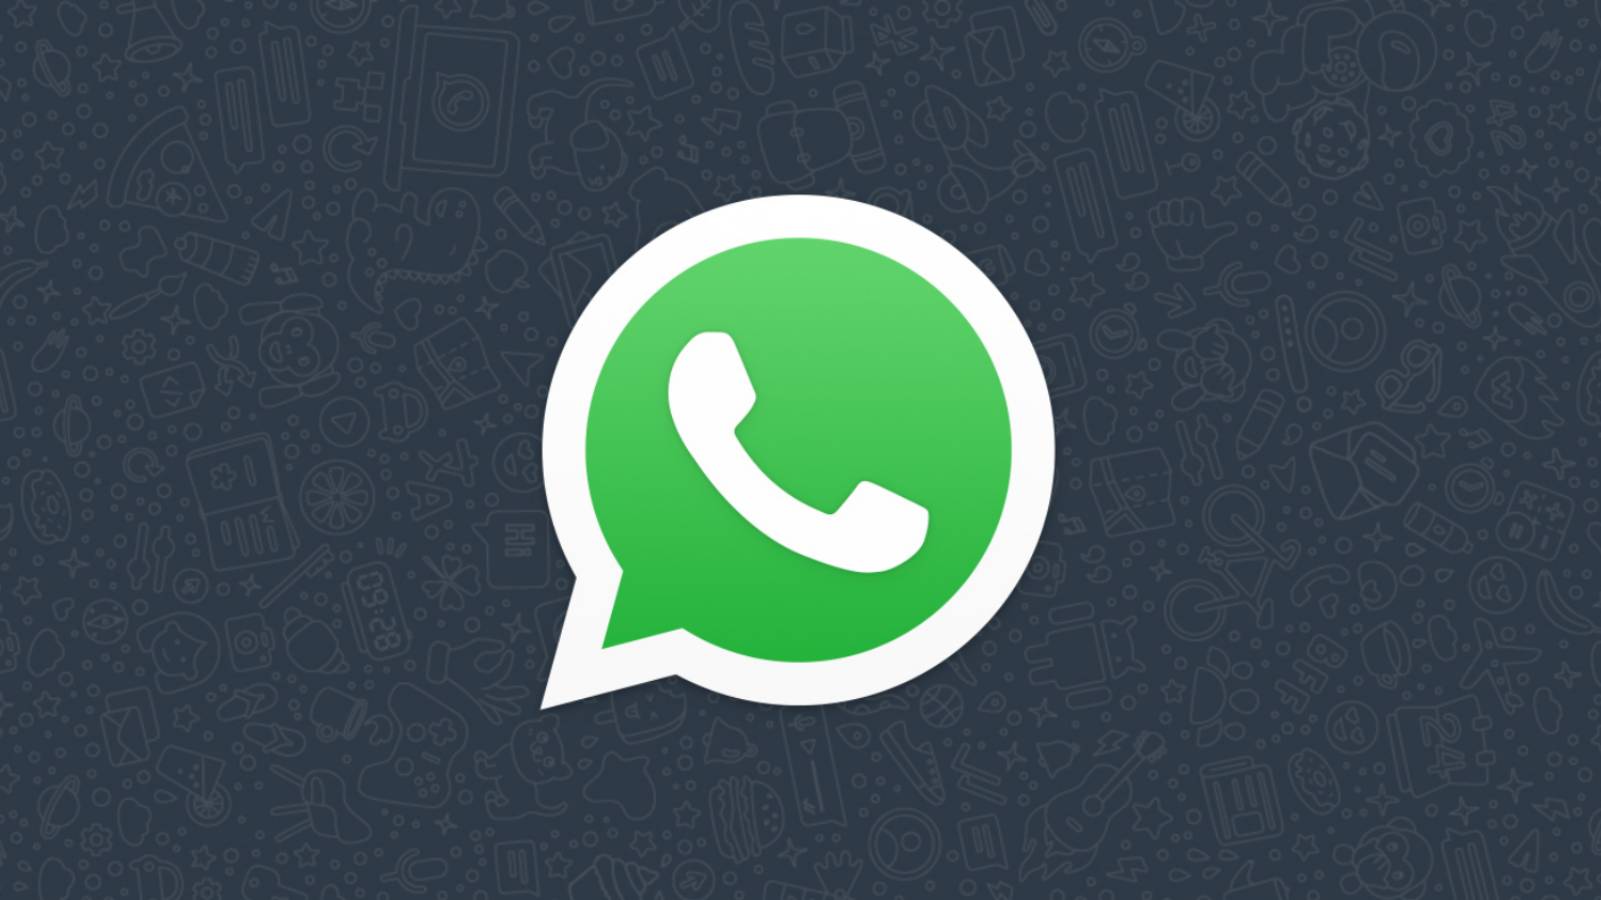 WhatsApp divizat